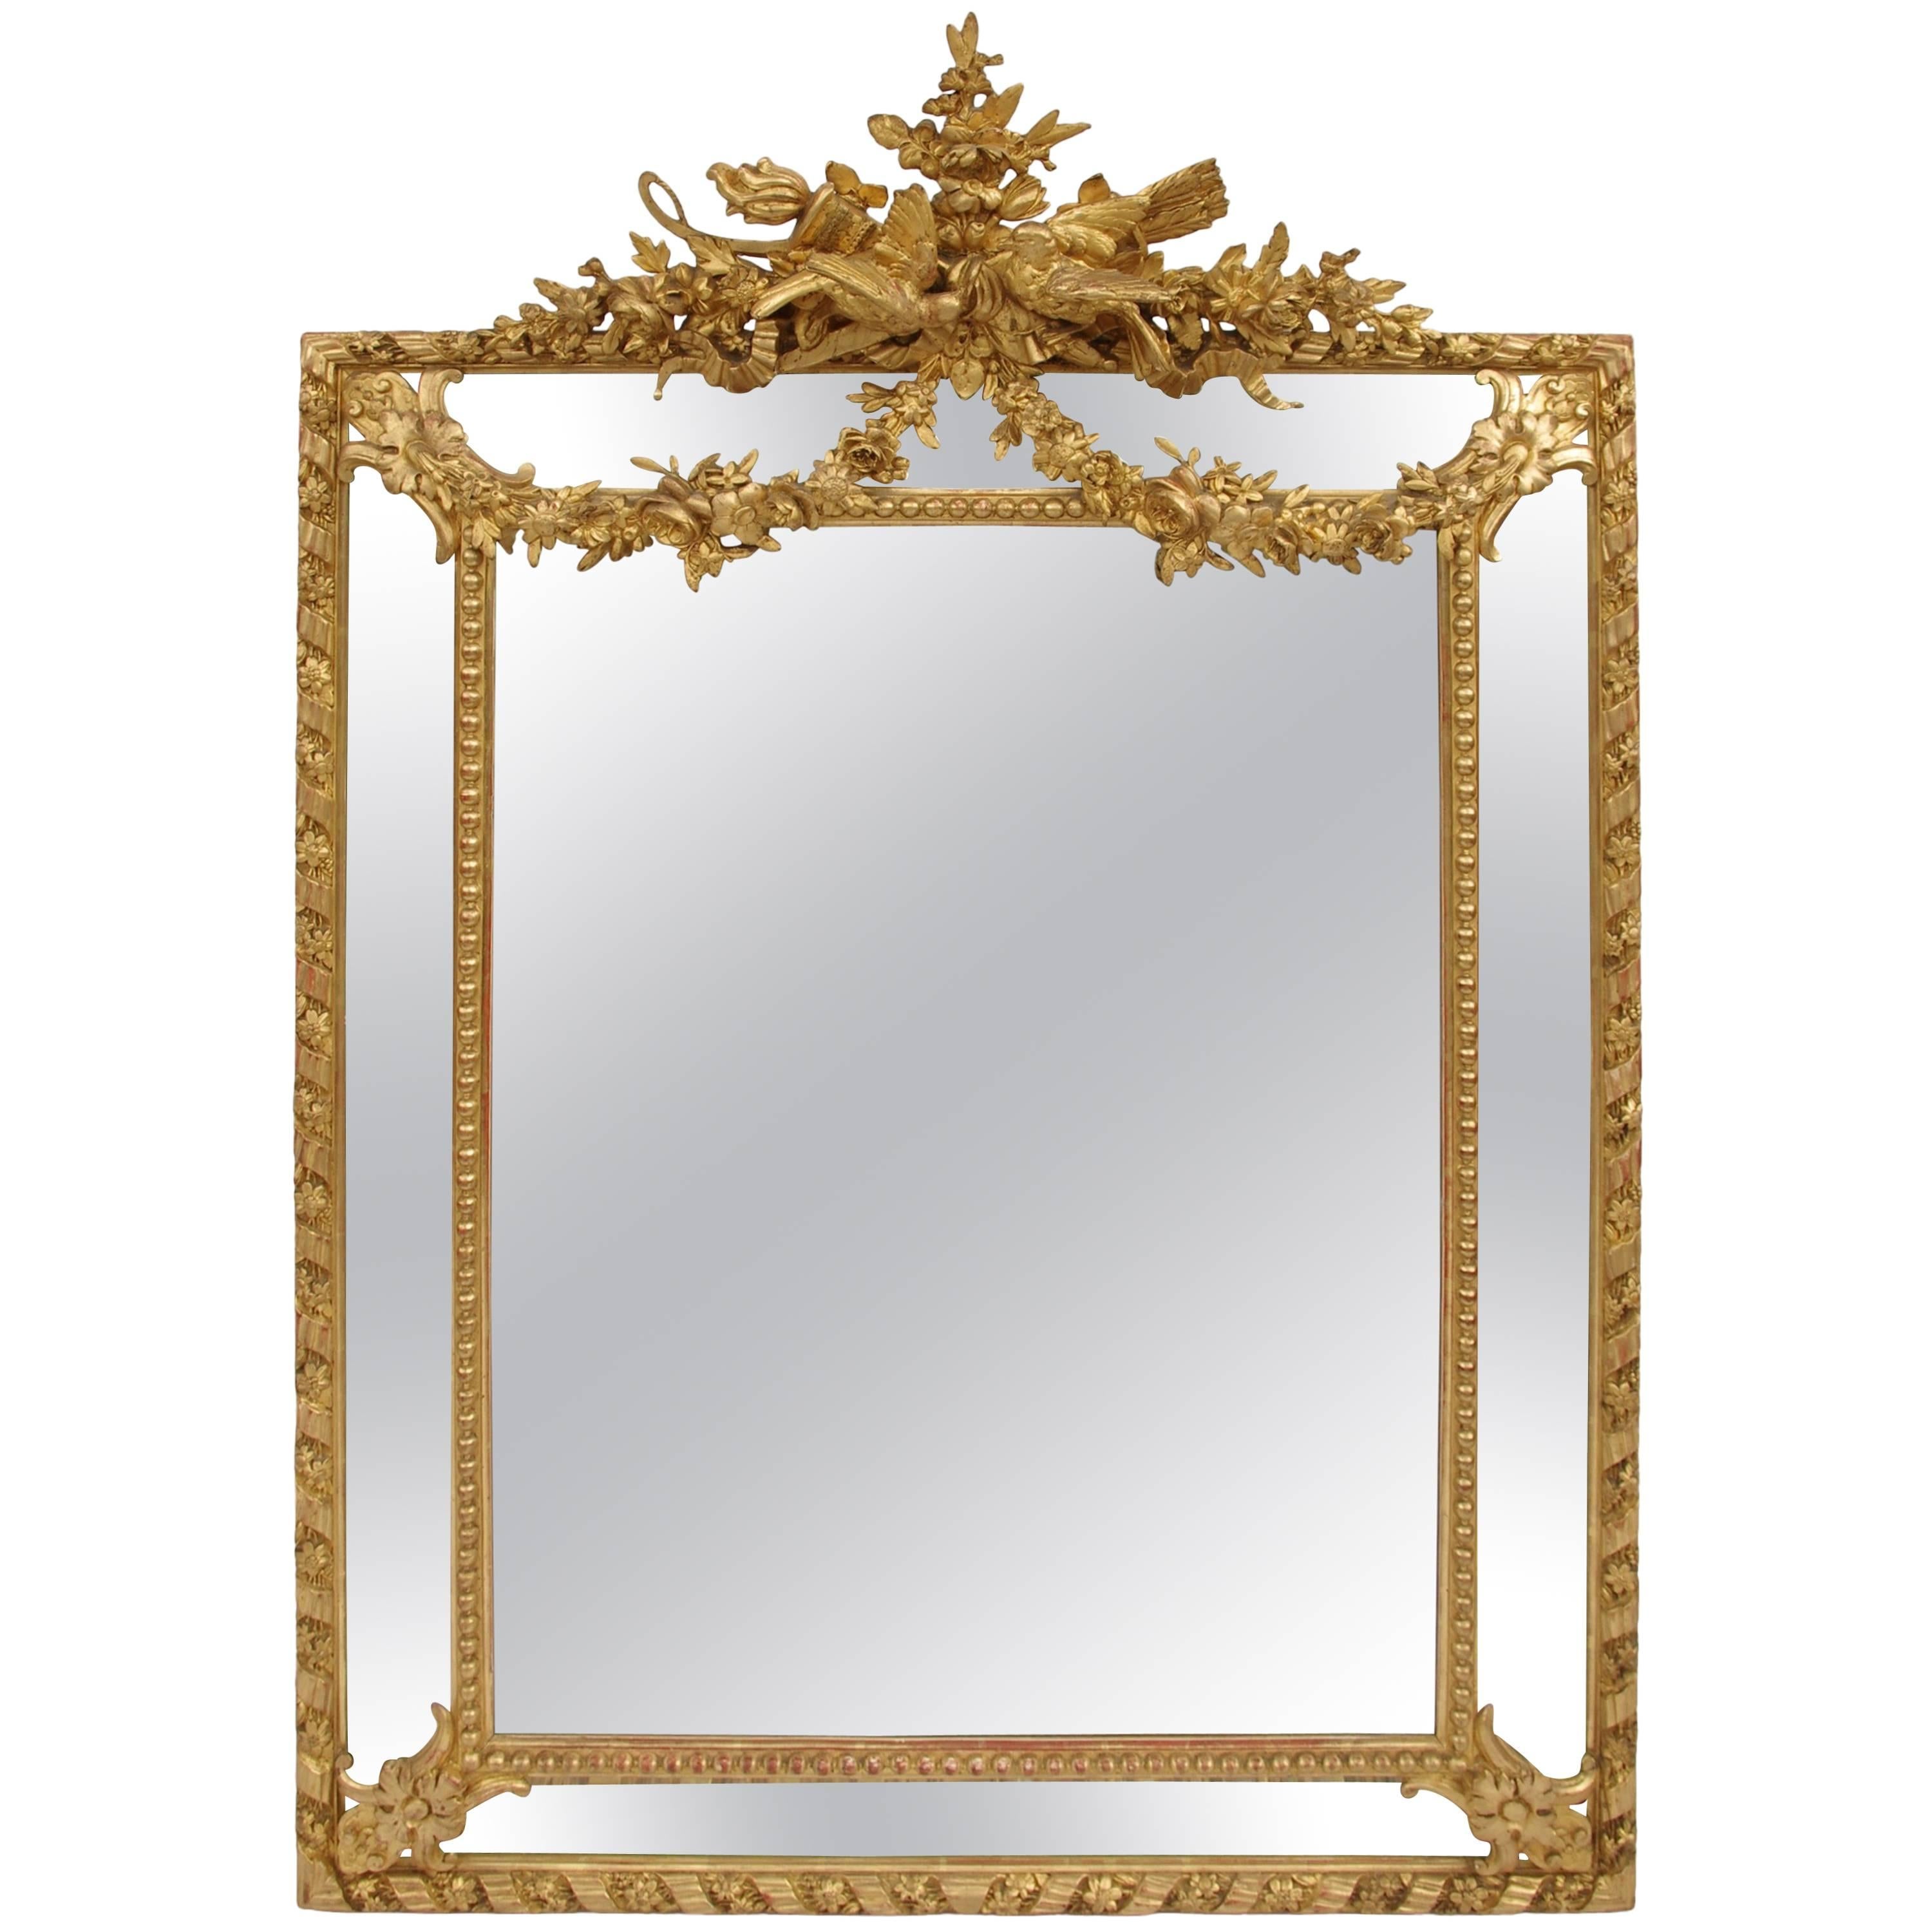 Napoleon III Period, Louis XVI Style Pareclose Gilt Stucco Mirror